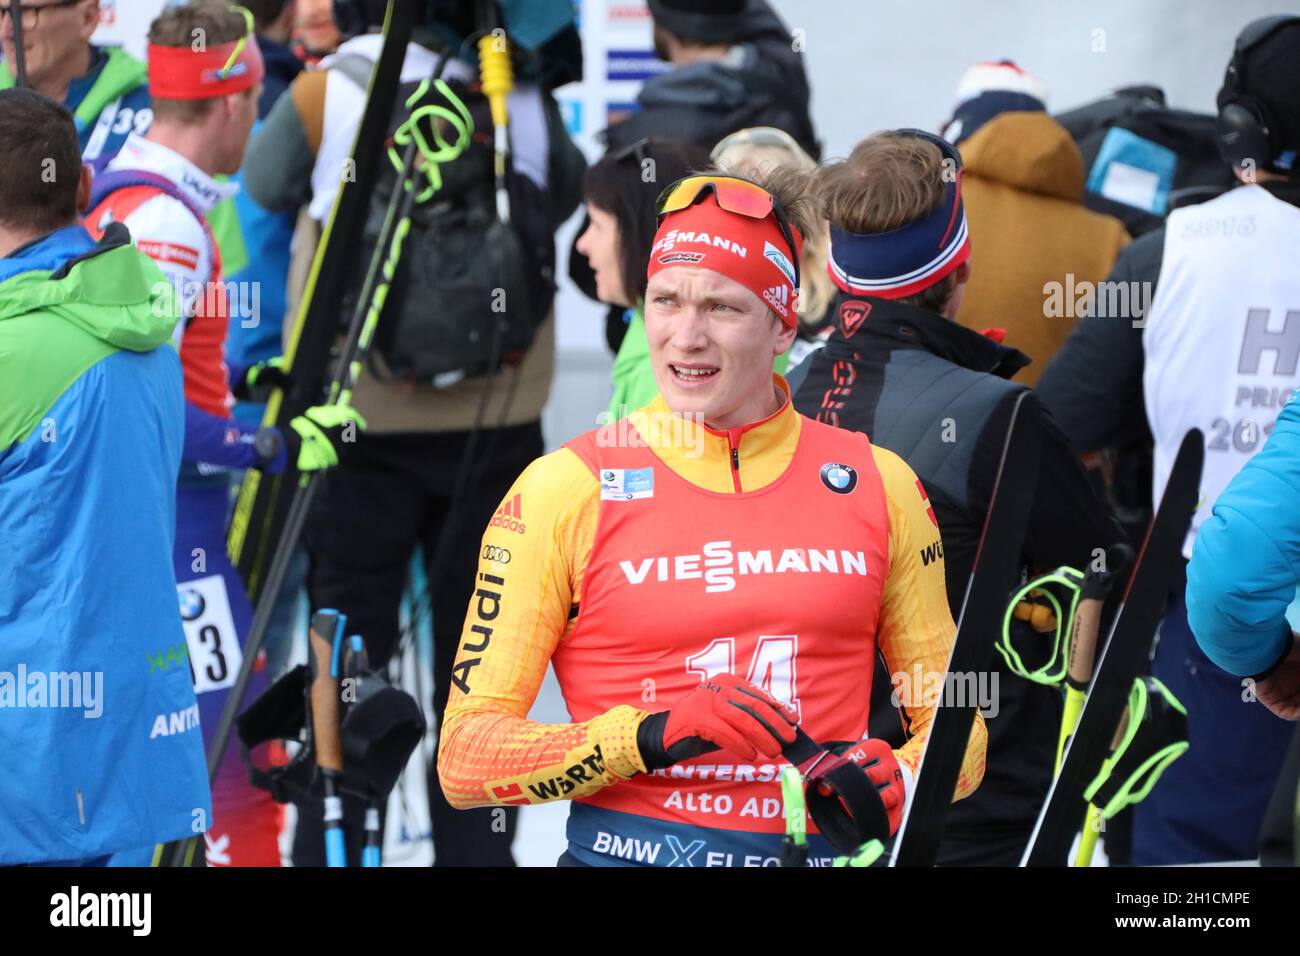 Enttäuschter Blick zur Anzeigetafel: Benedikt Doll (SZ Breitnau) nach dem Verfolger bei der IBU Biathlon-Weltmeisterschaft Antholz 2020 Stock Photo